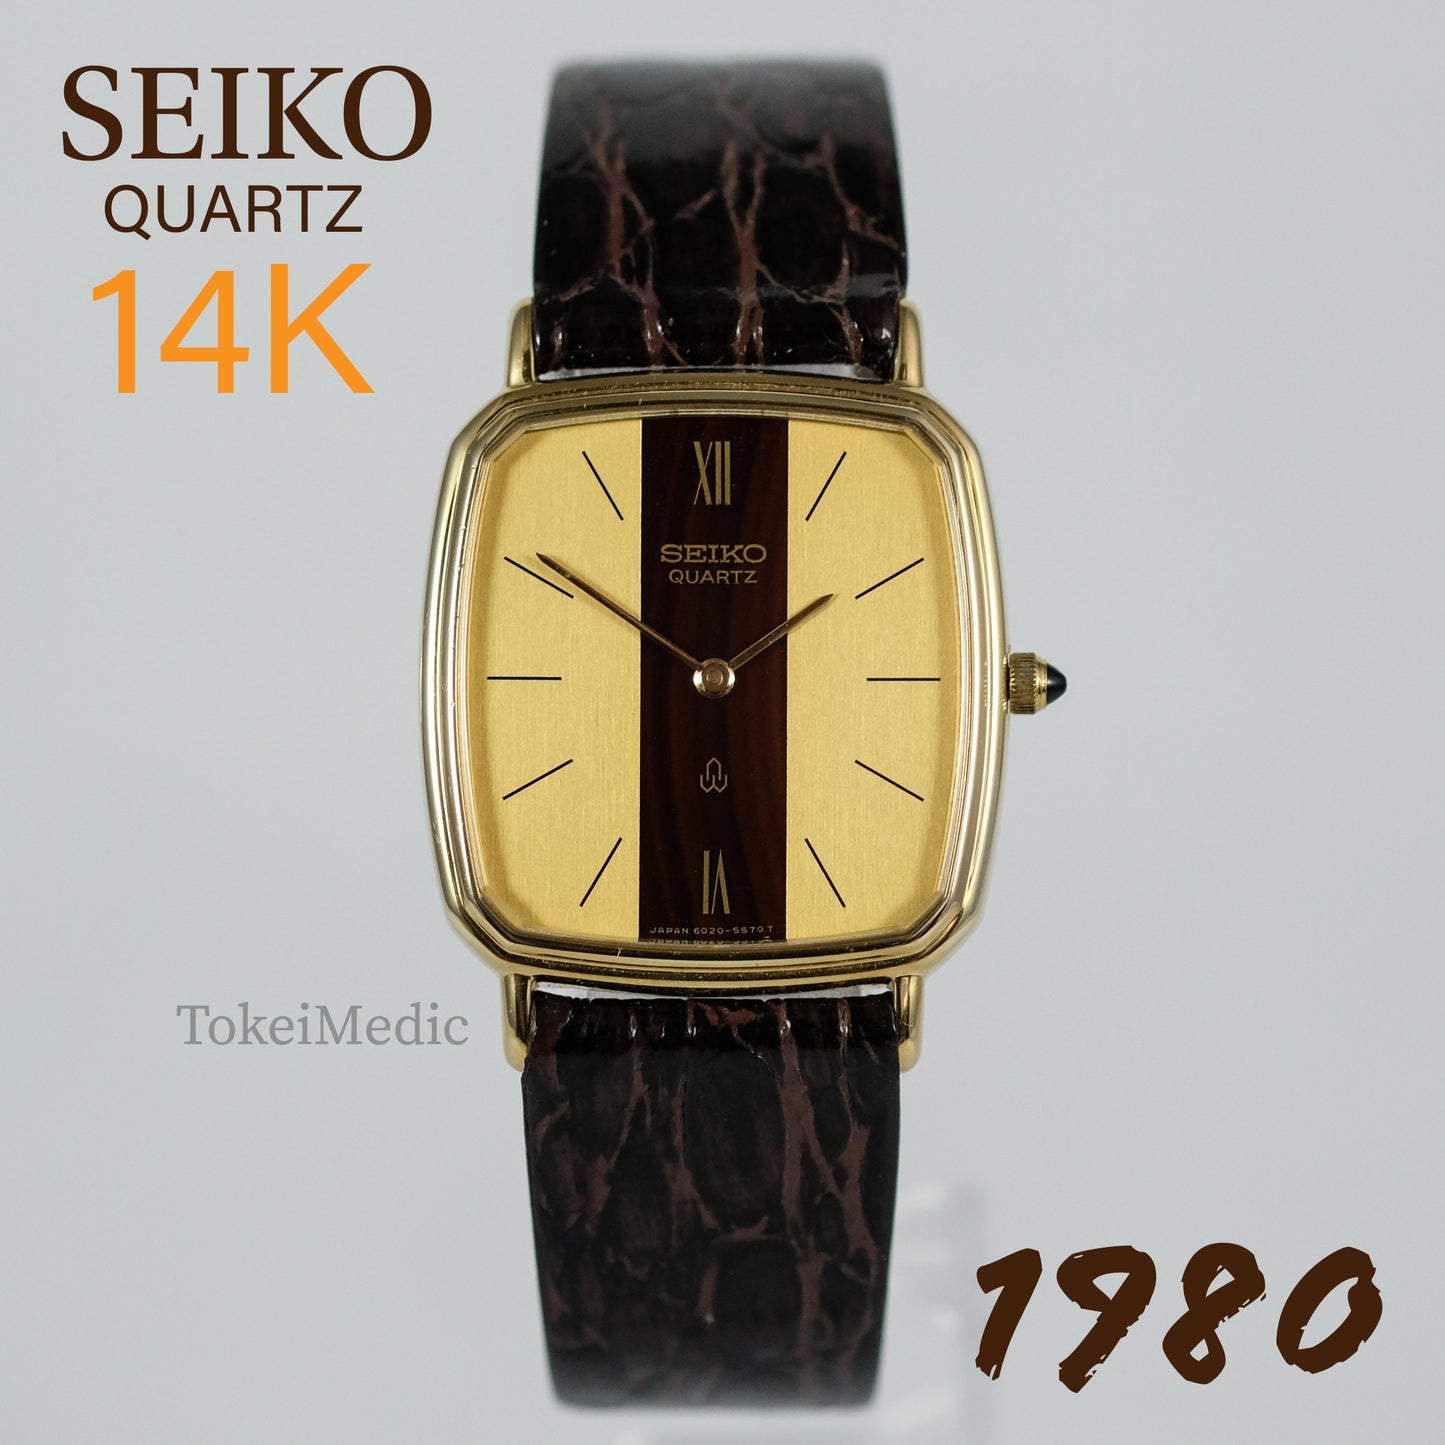 1980 Seiko Quartz 14K Gold 6020-5430